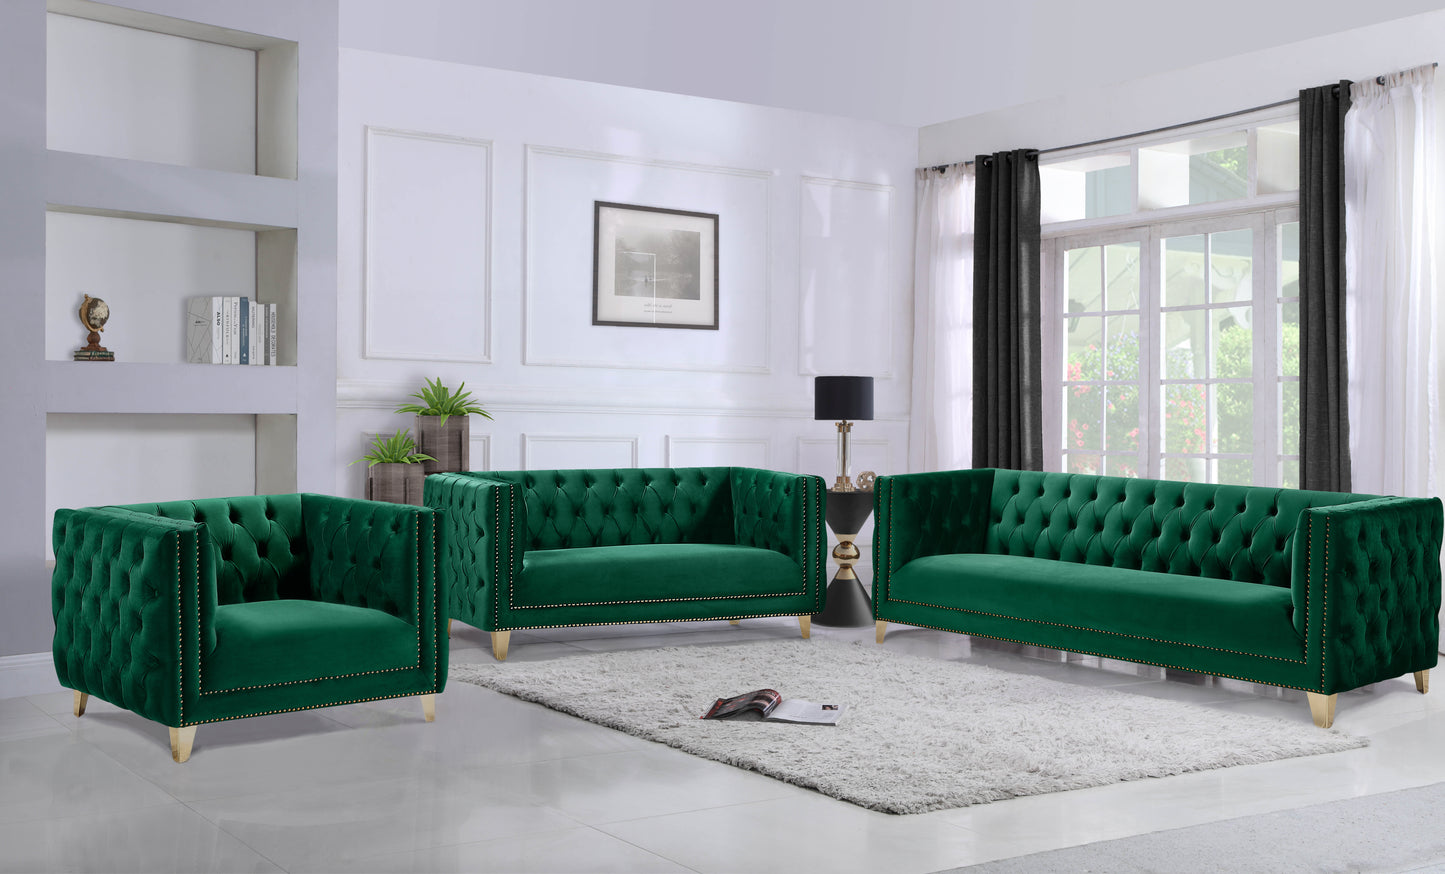 alexander green velvet sofa s